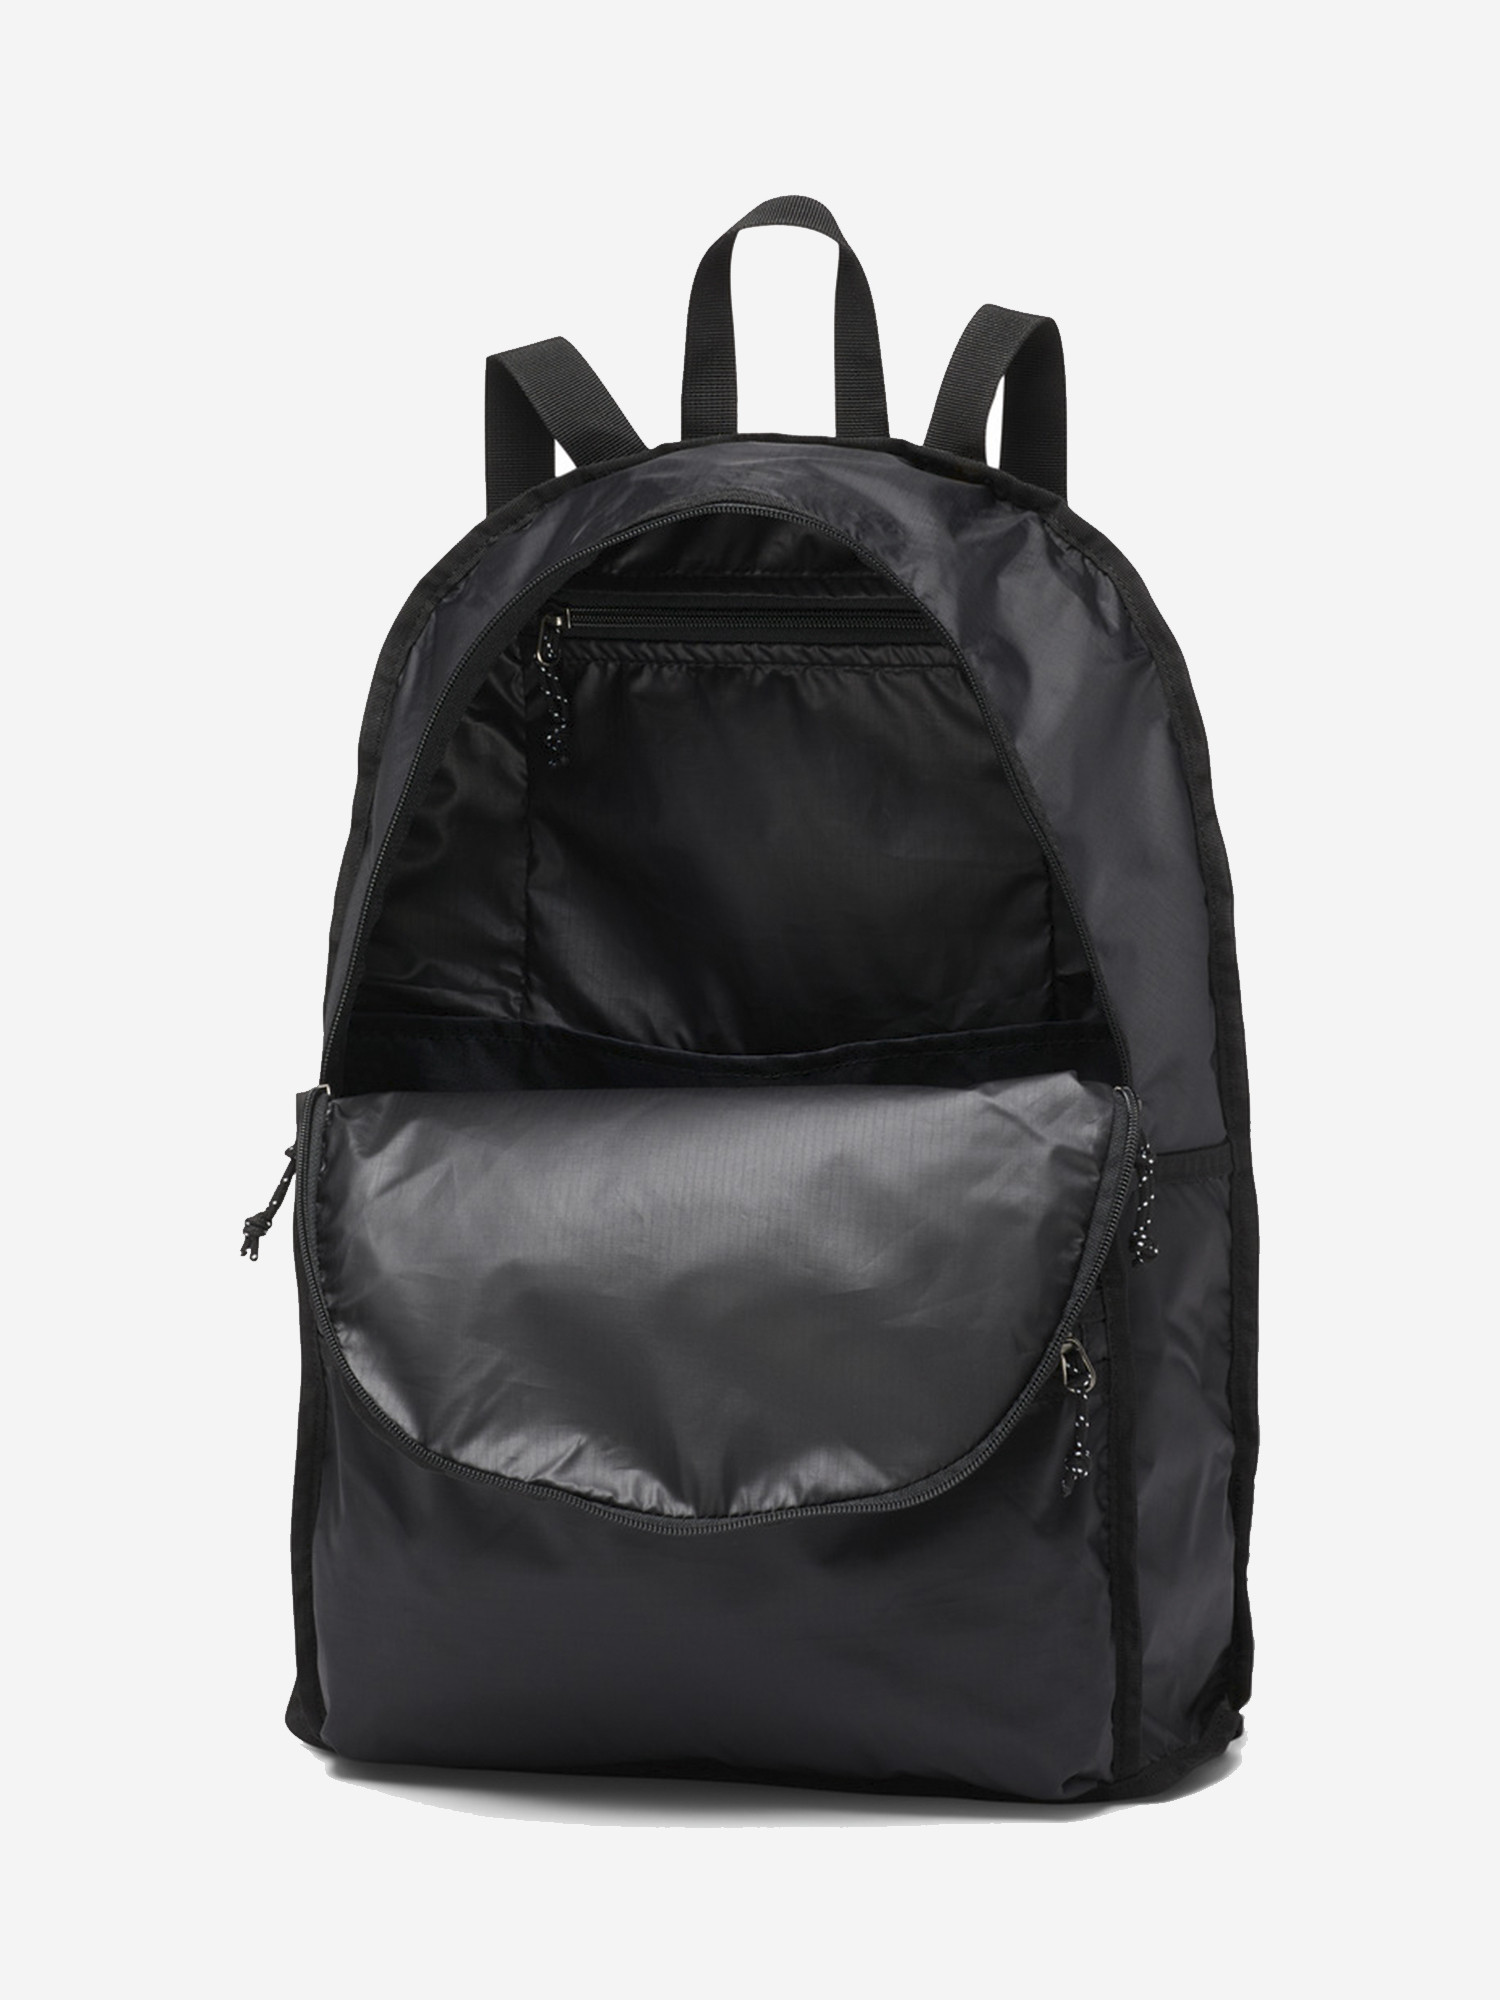 Рюкзак Columbia Lightweight Packable II 21L Backpack